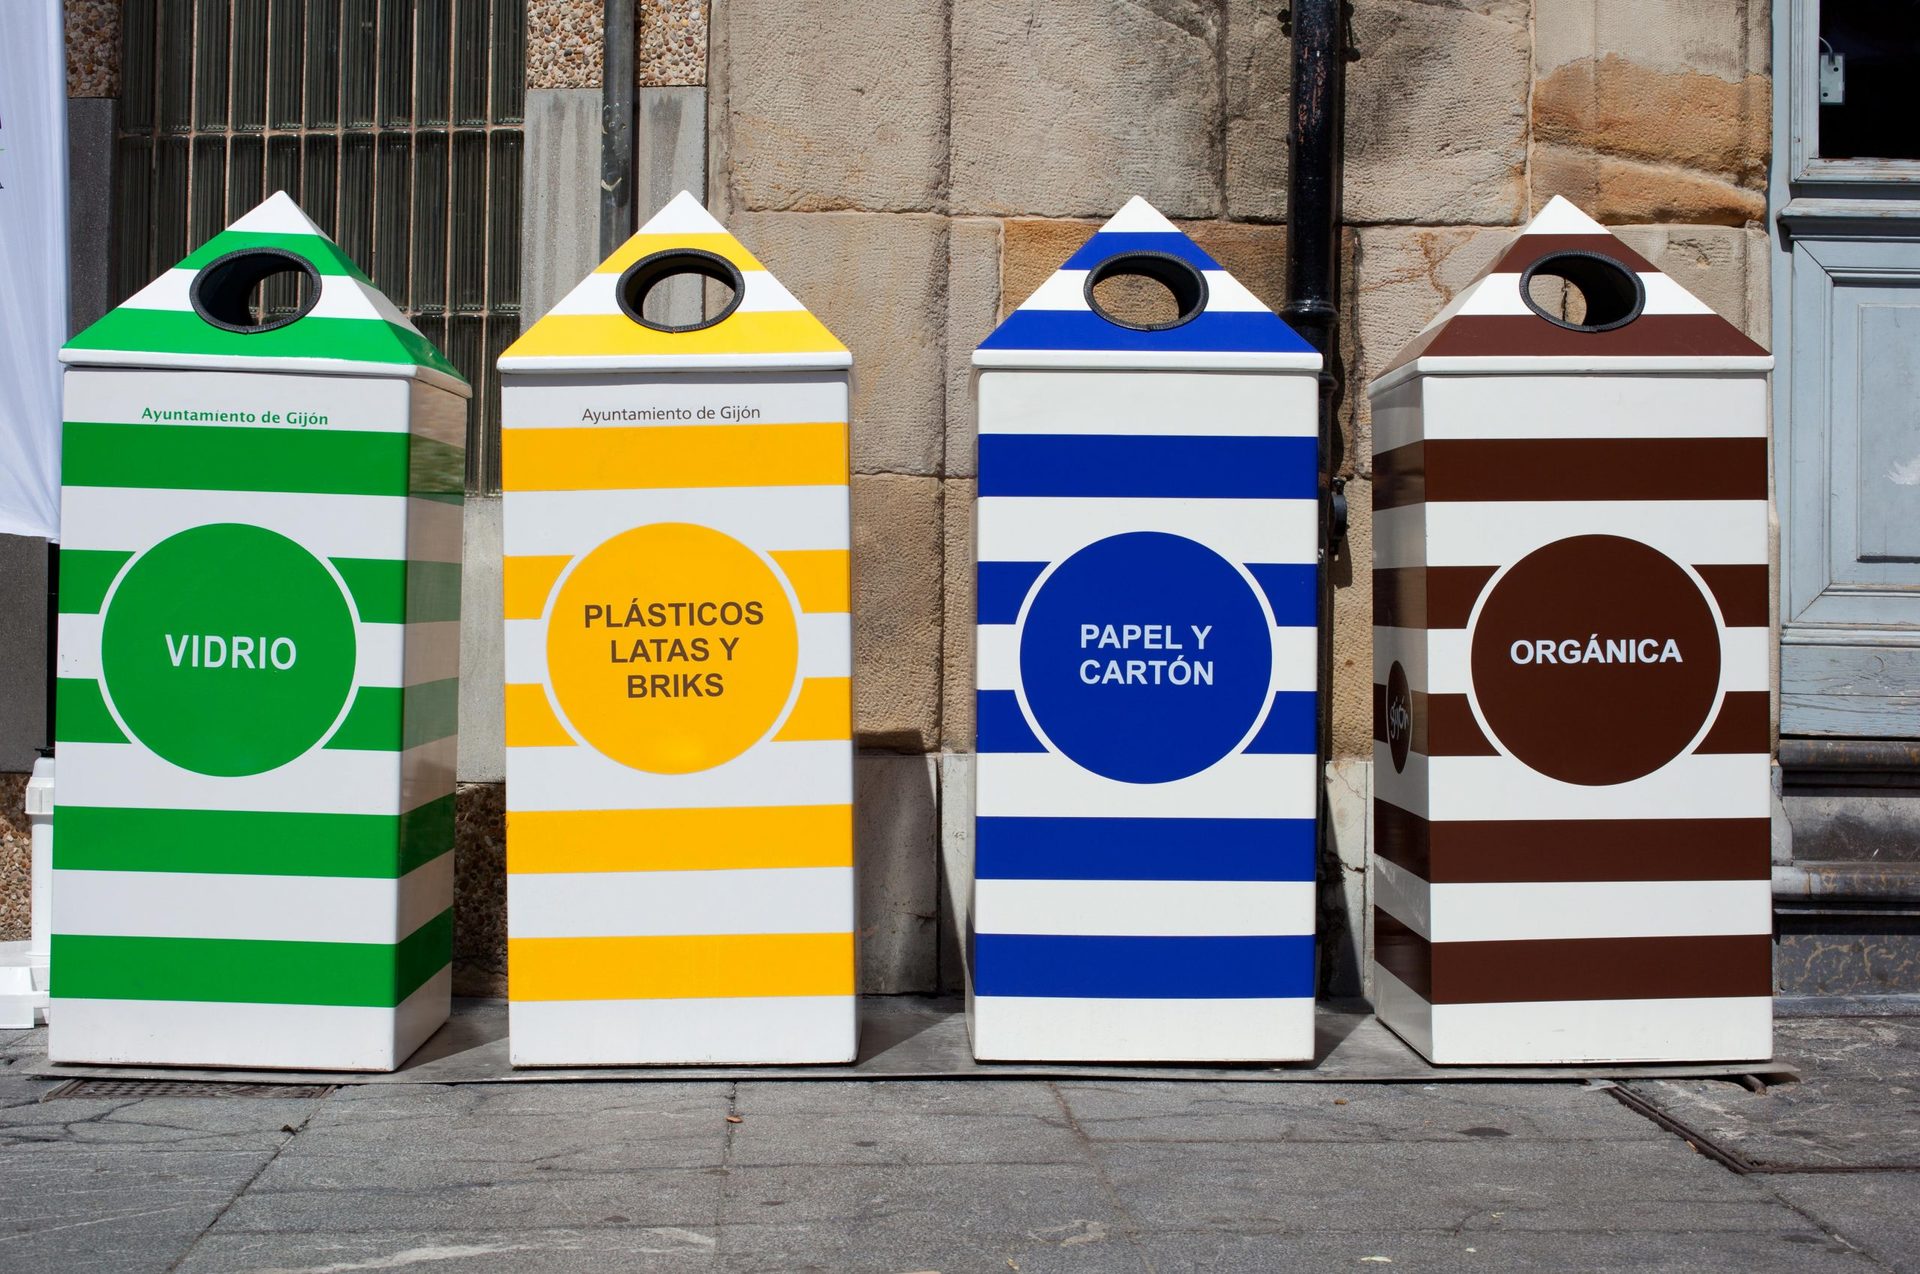 Regional waste management in Spain